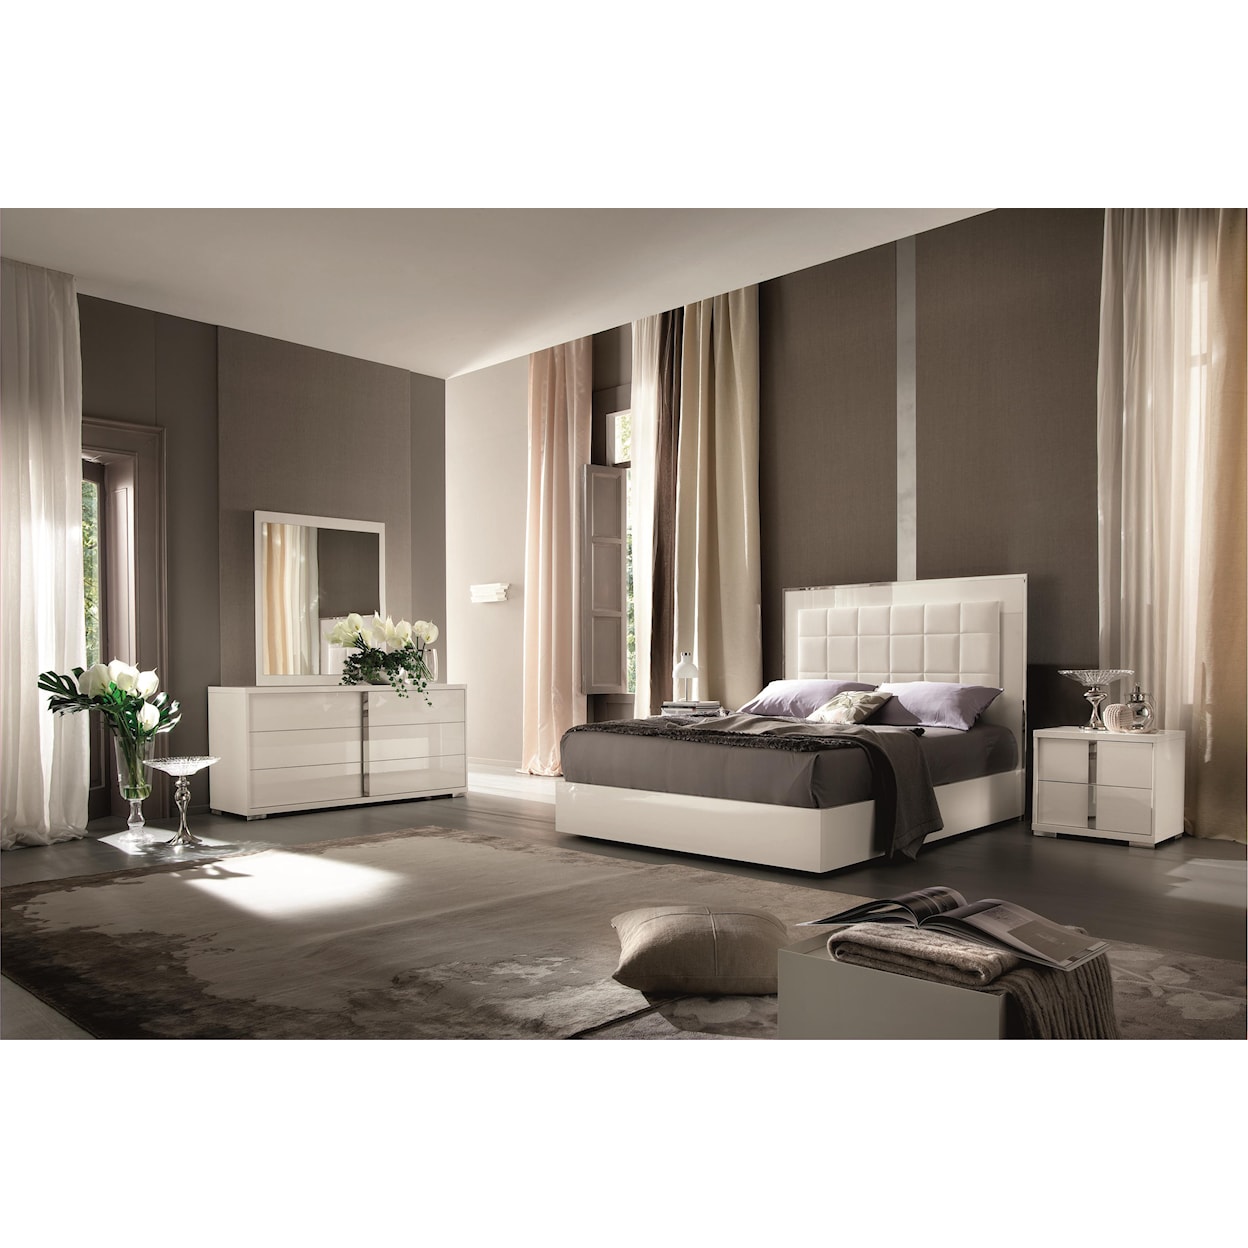 Alf Italia Imperia Queen Bedroom Group